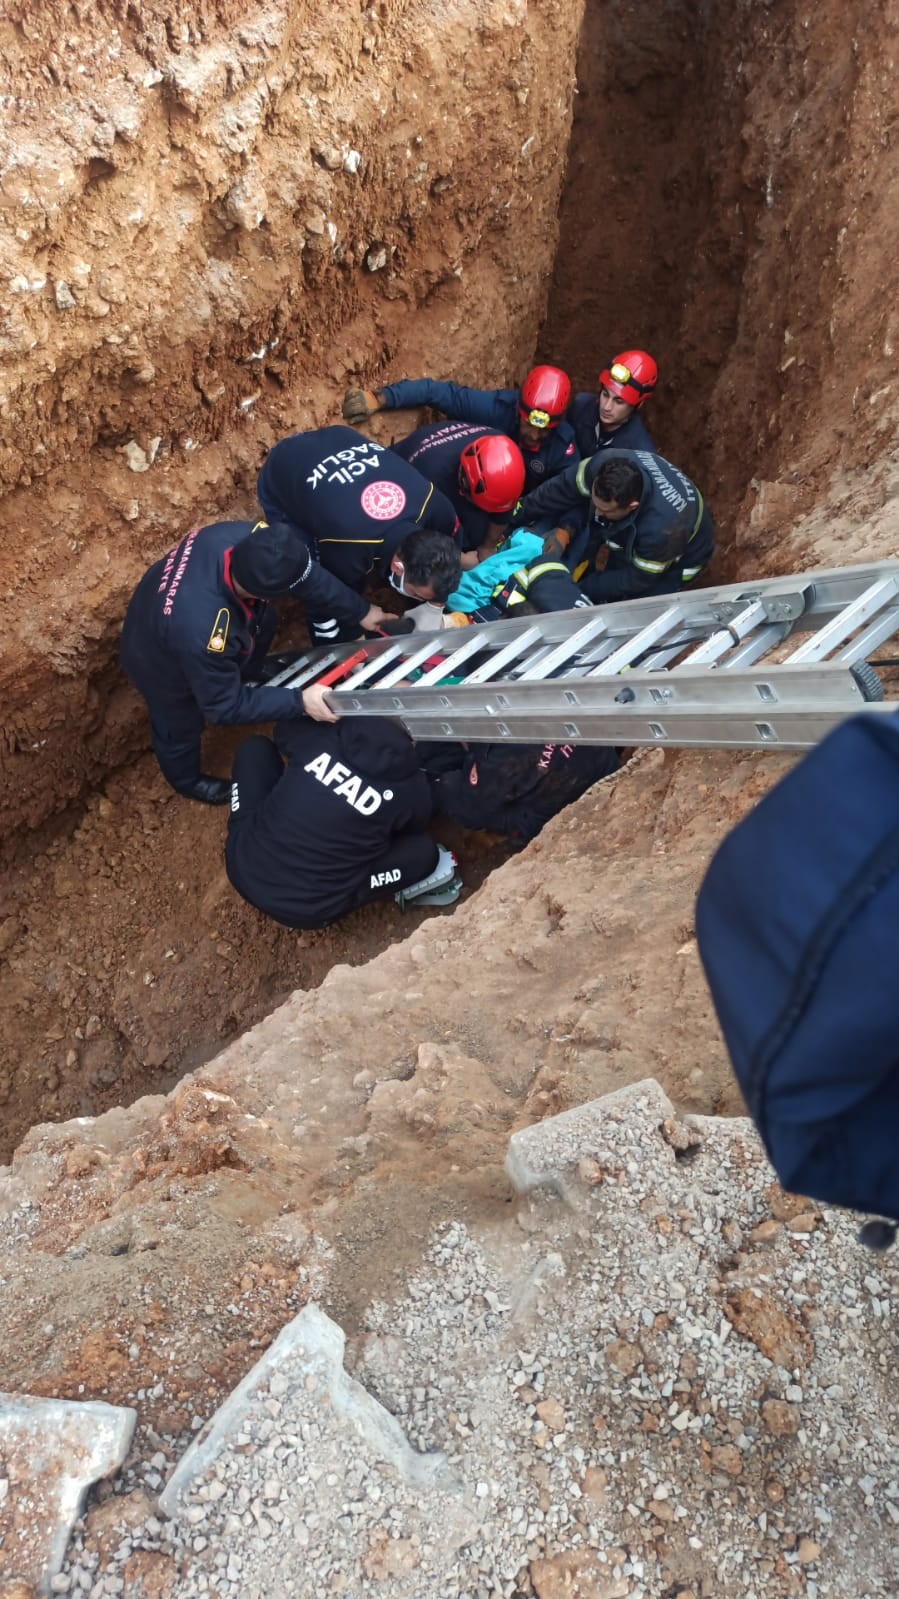 Kahramanmaraş’ta kanalizasyon kazısında göçük: 1 işçi yaralandı #kahramanmaras